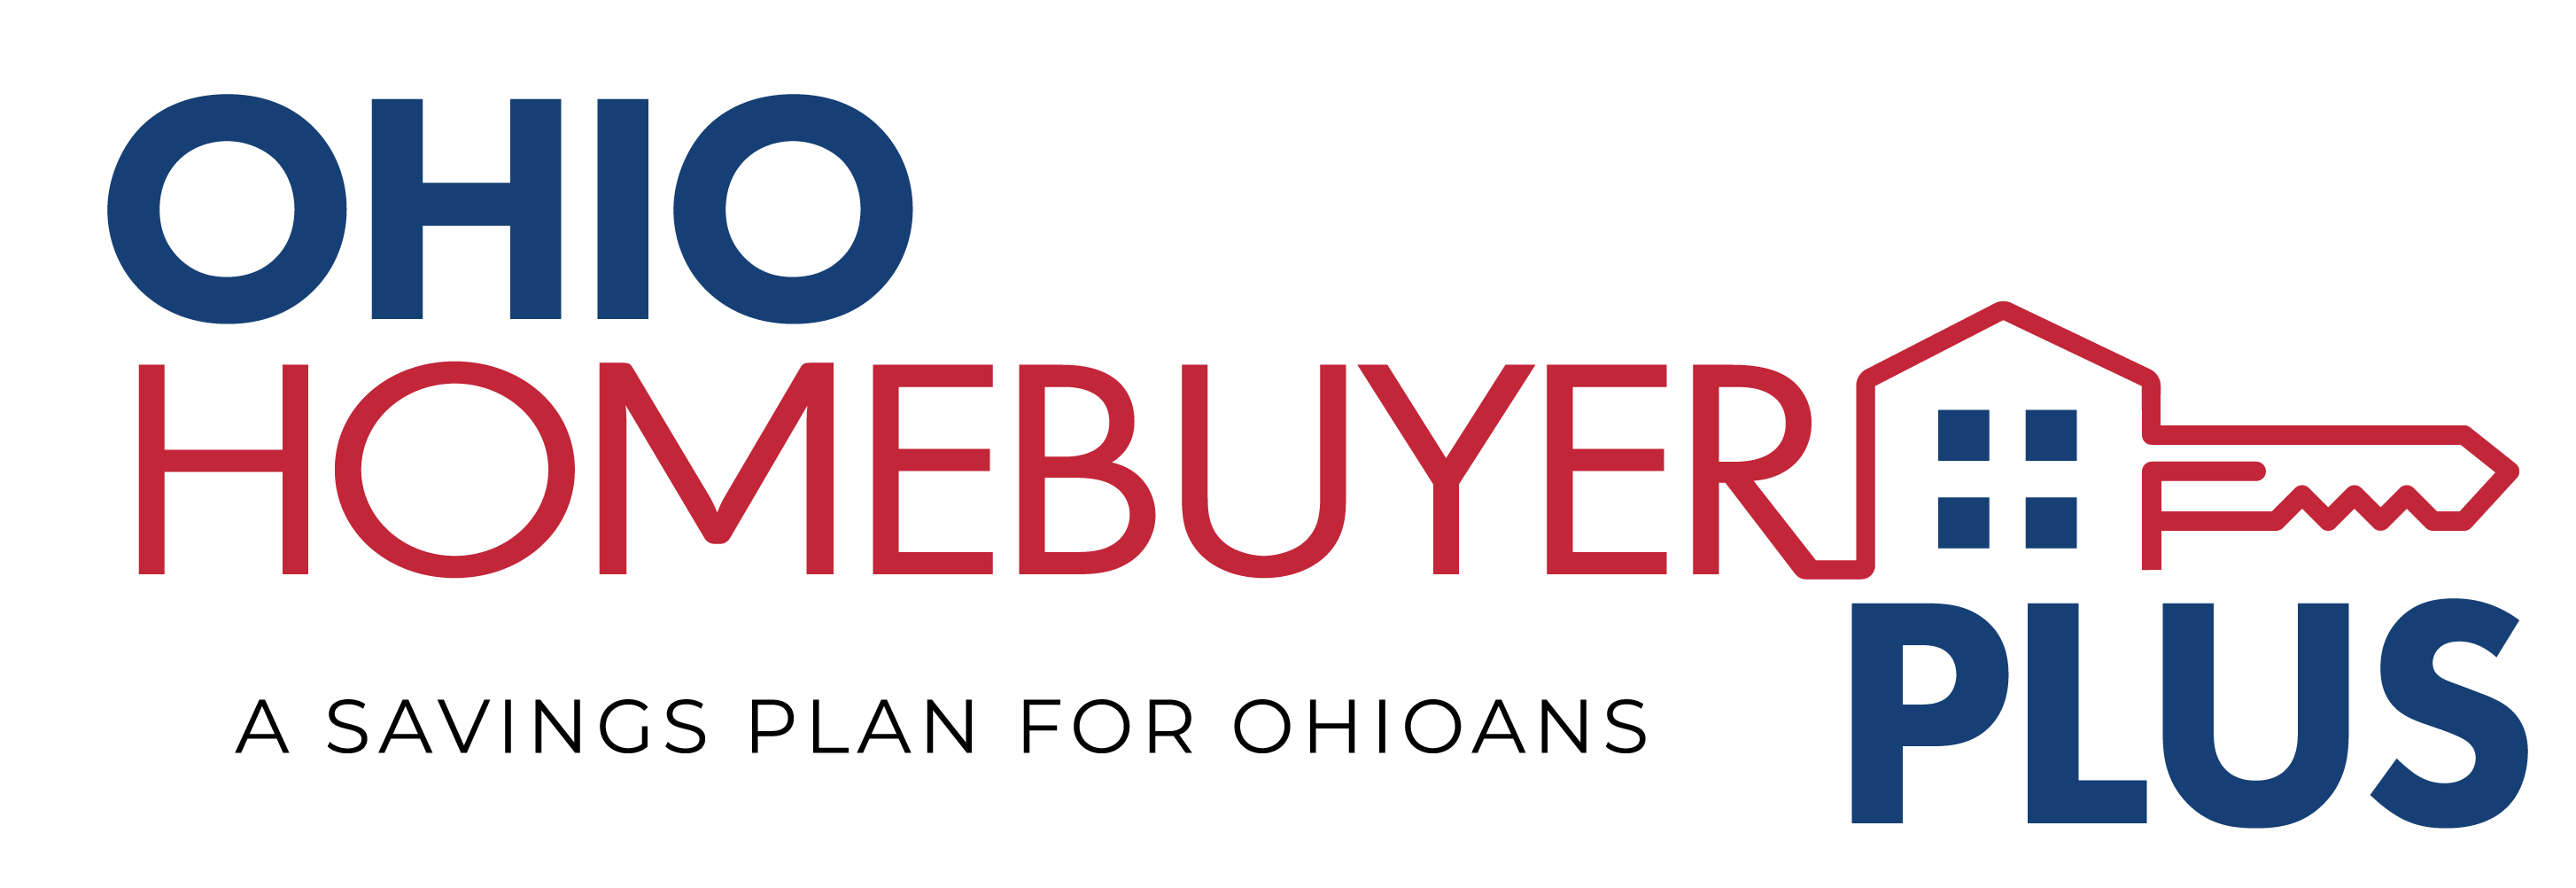 Ohio Homebuyer Plus logo image